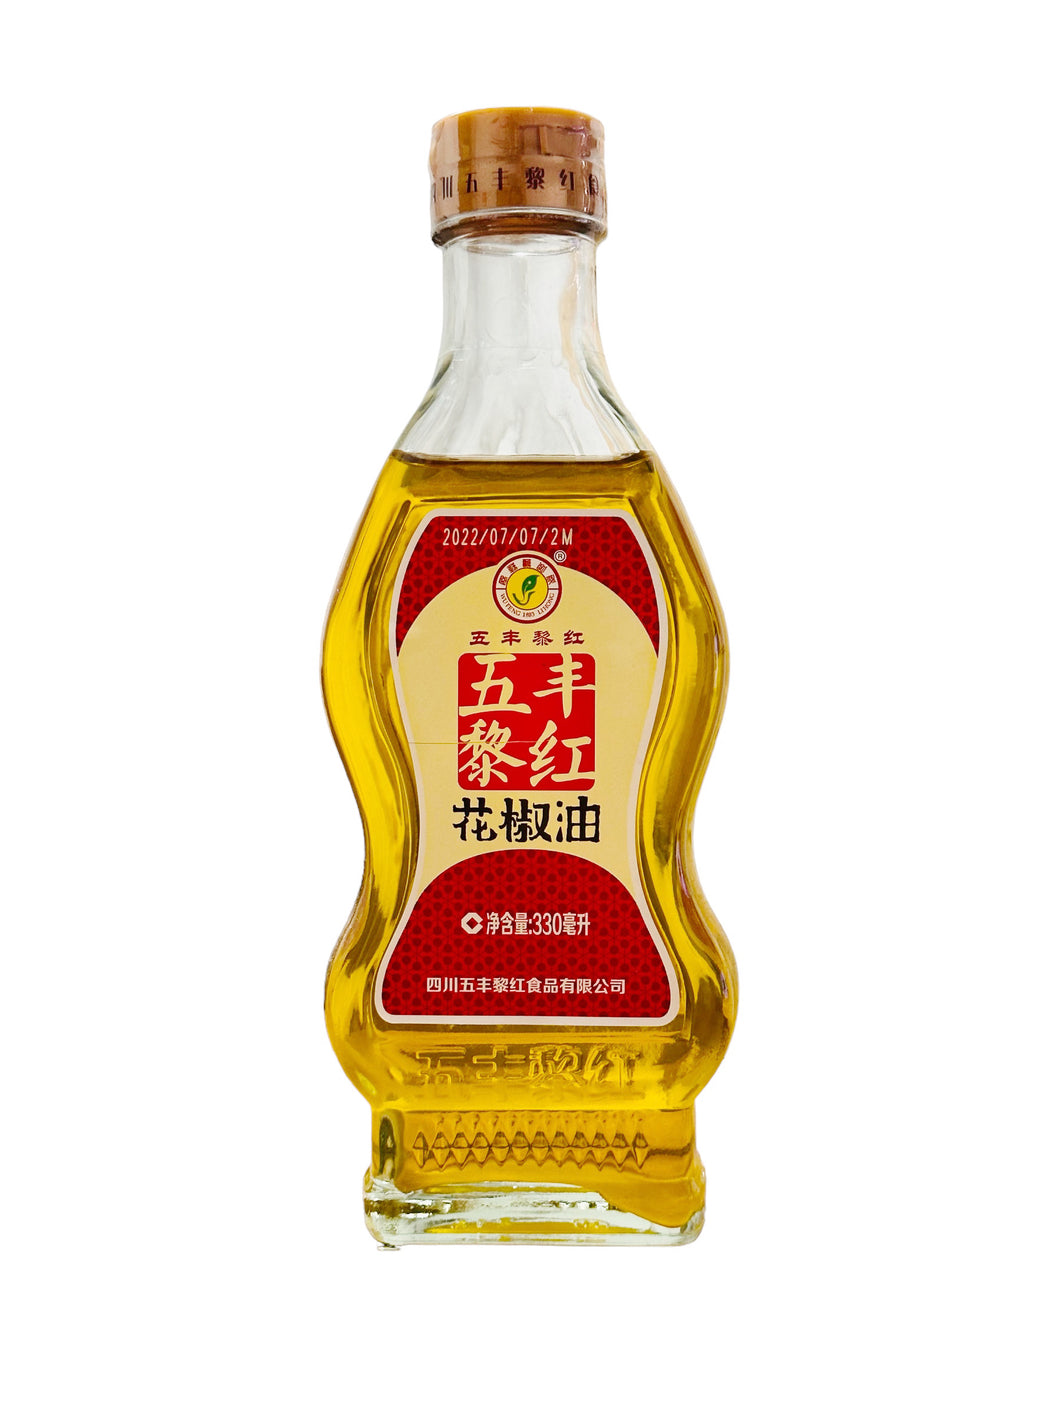 LH Pepper Oil 330g 大黎红花椒油